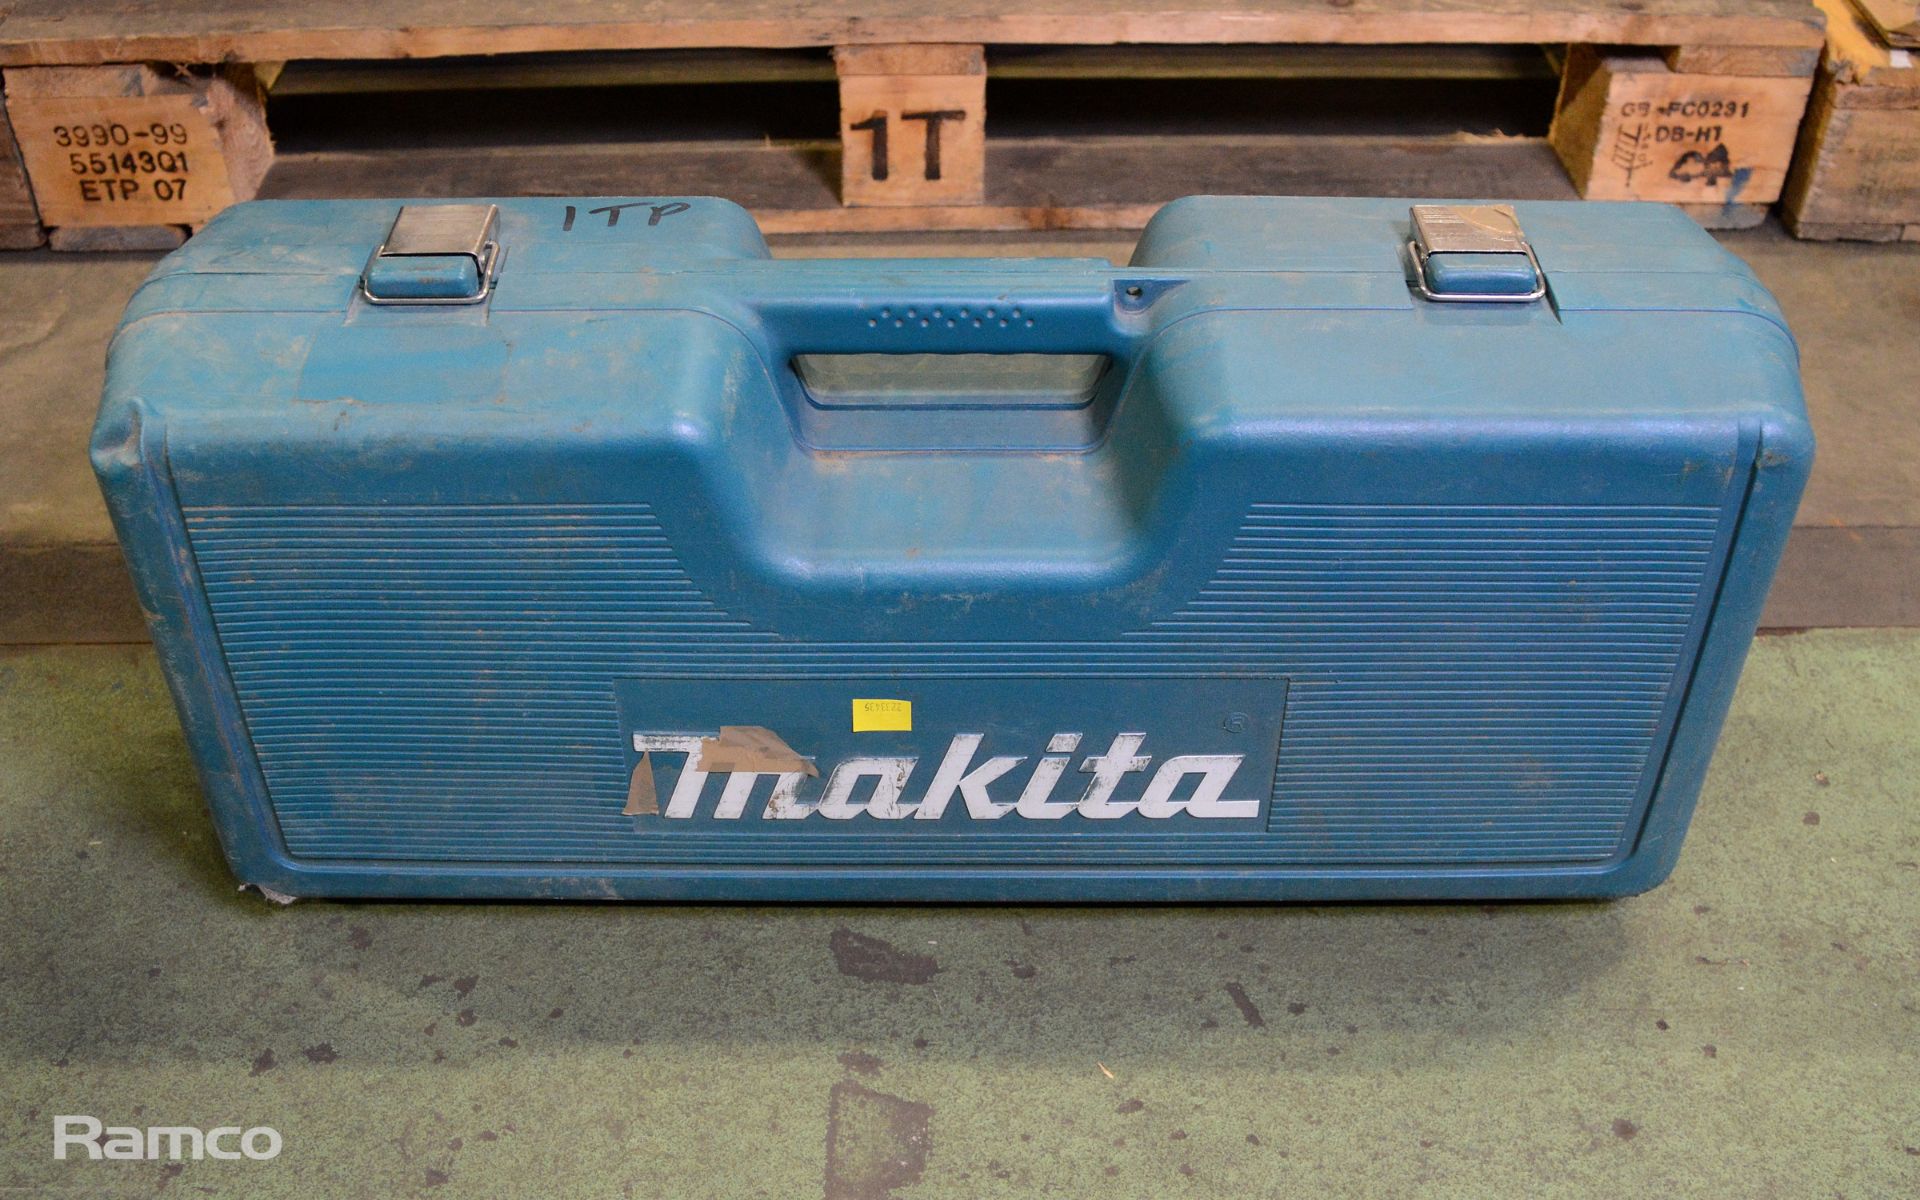 Makita GA9020S portable electric angle grinder 110V - Image 4 of 4